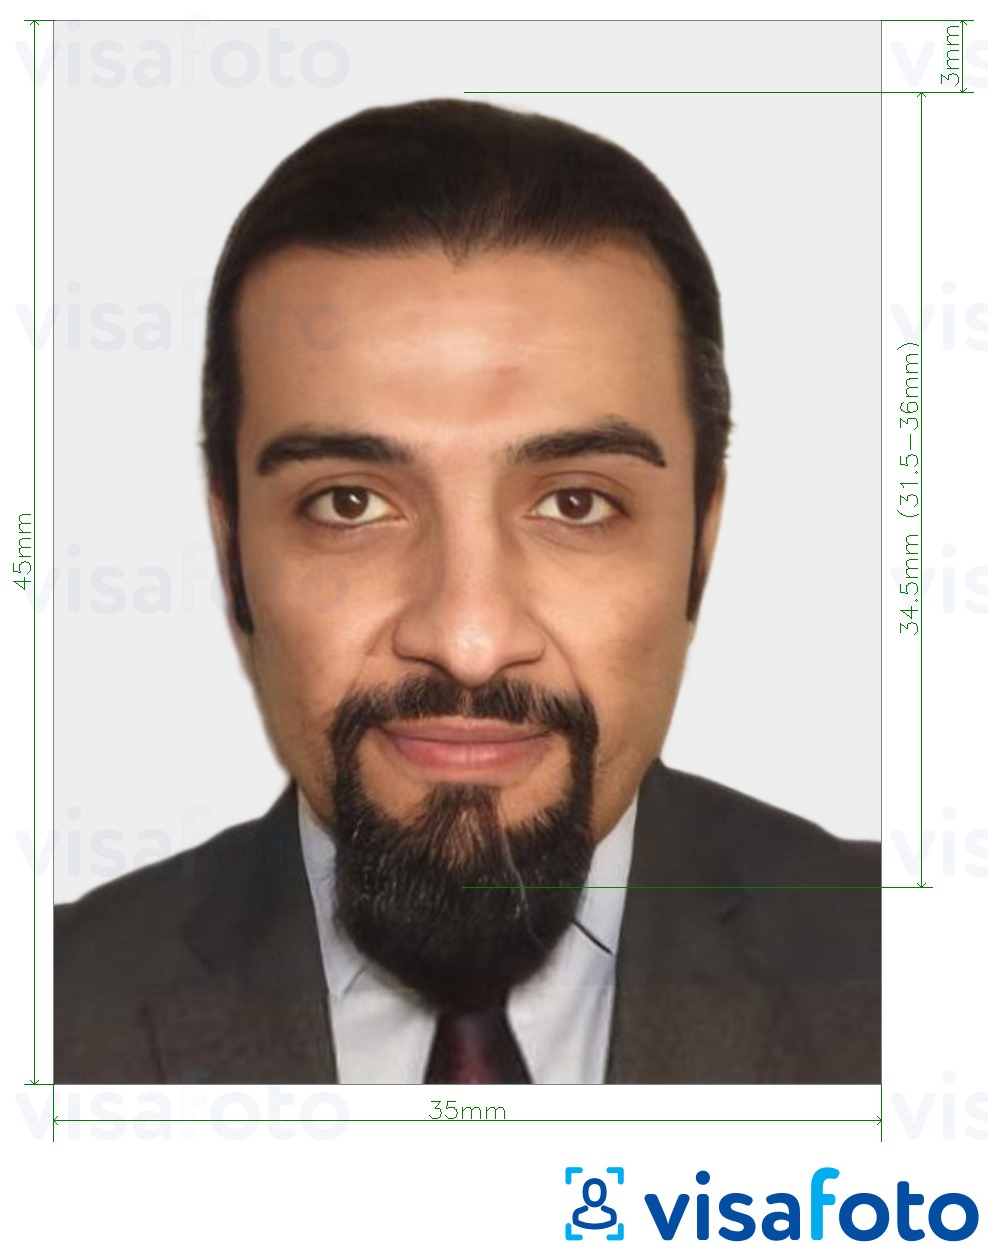 Exemple de foto per a Visa de Mauritània 35x45 mm (3.5x4.5 cm) amb la mida exacta especificada